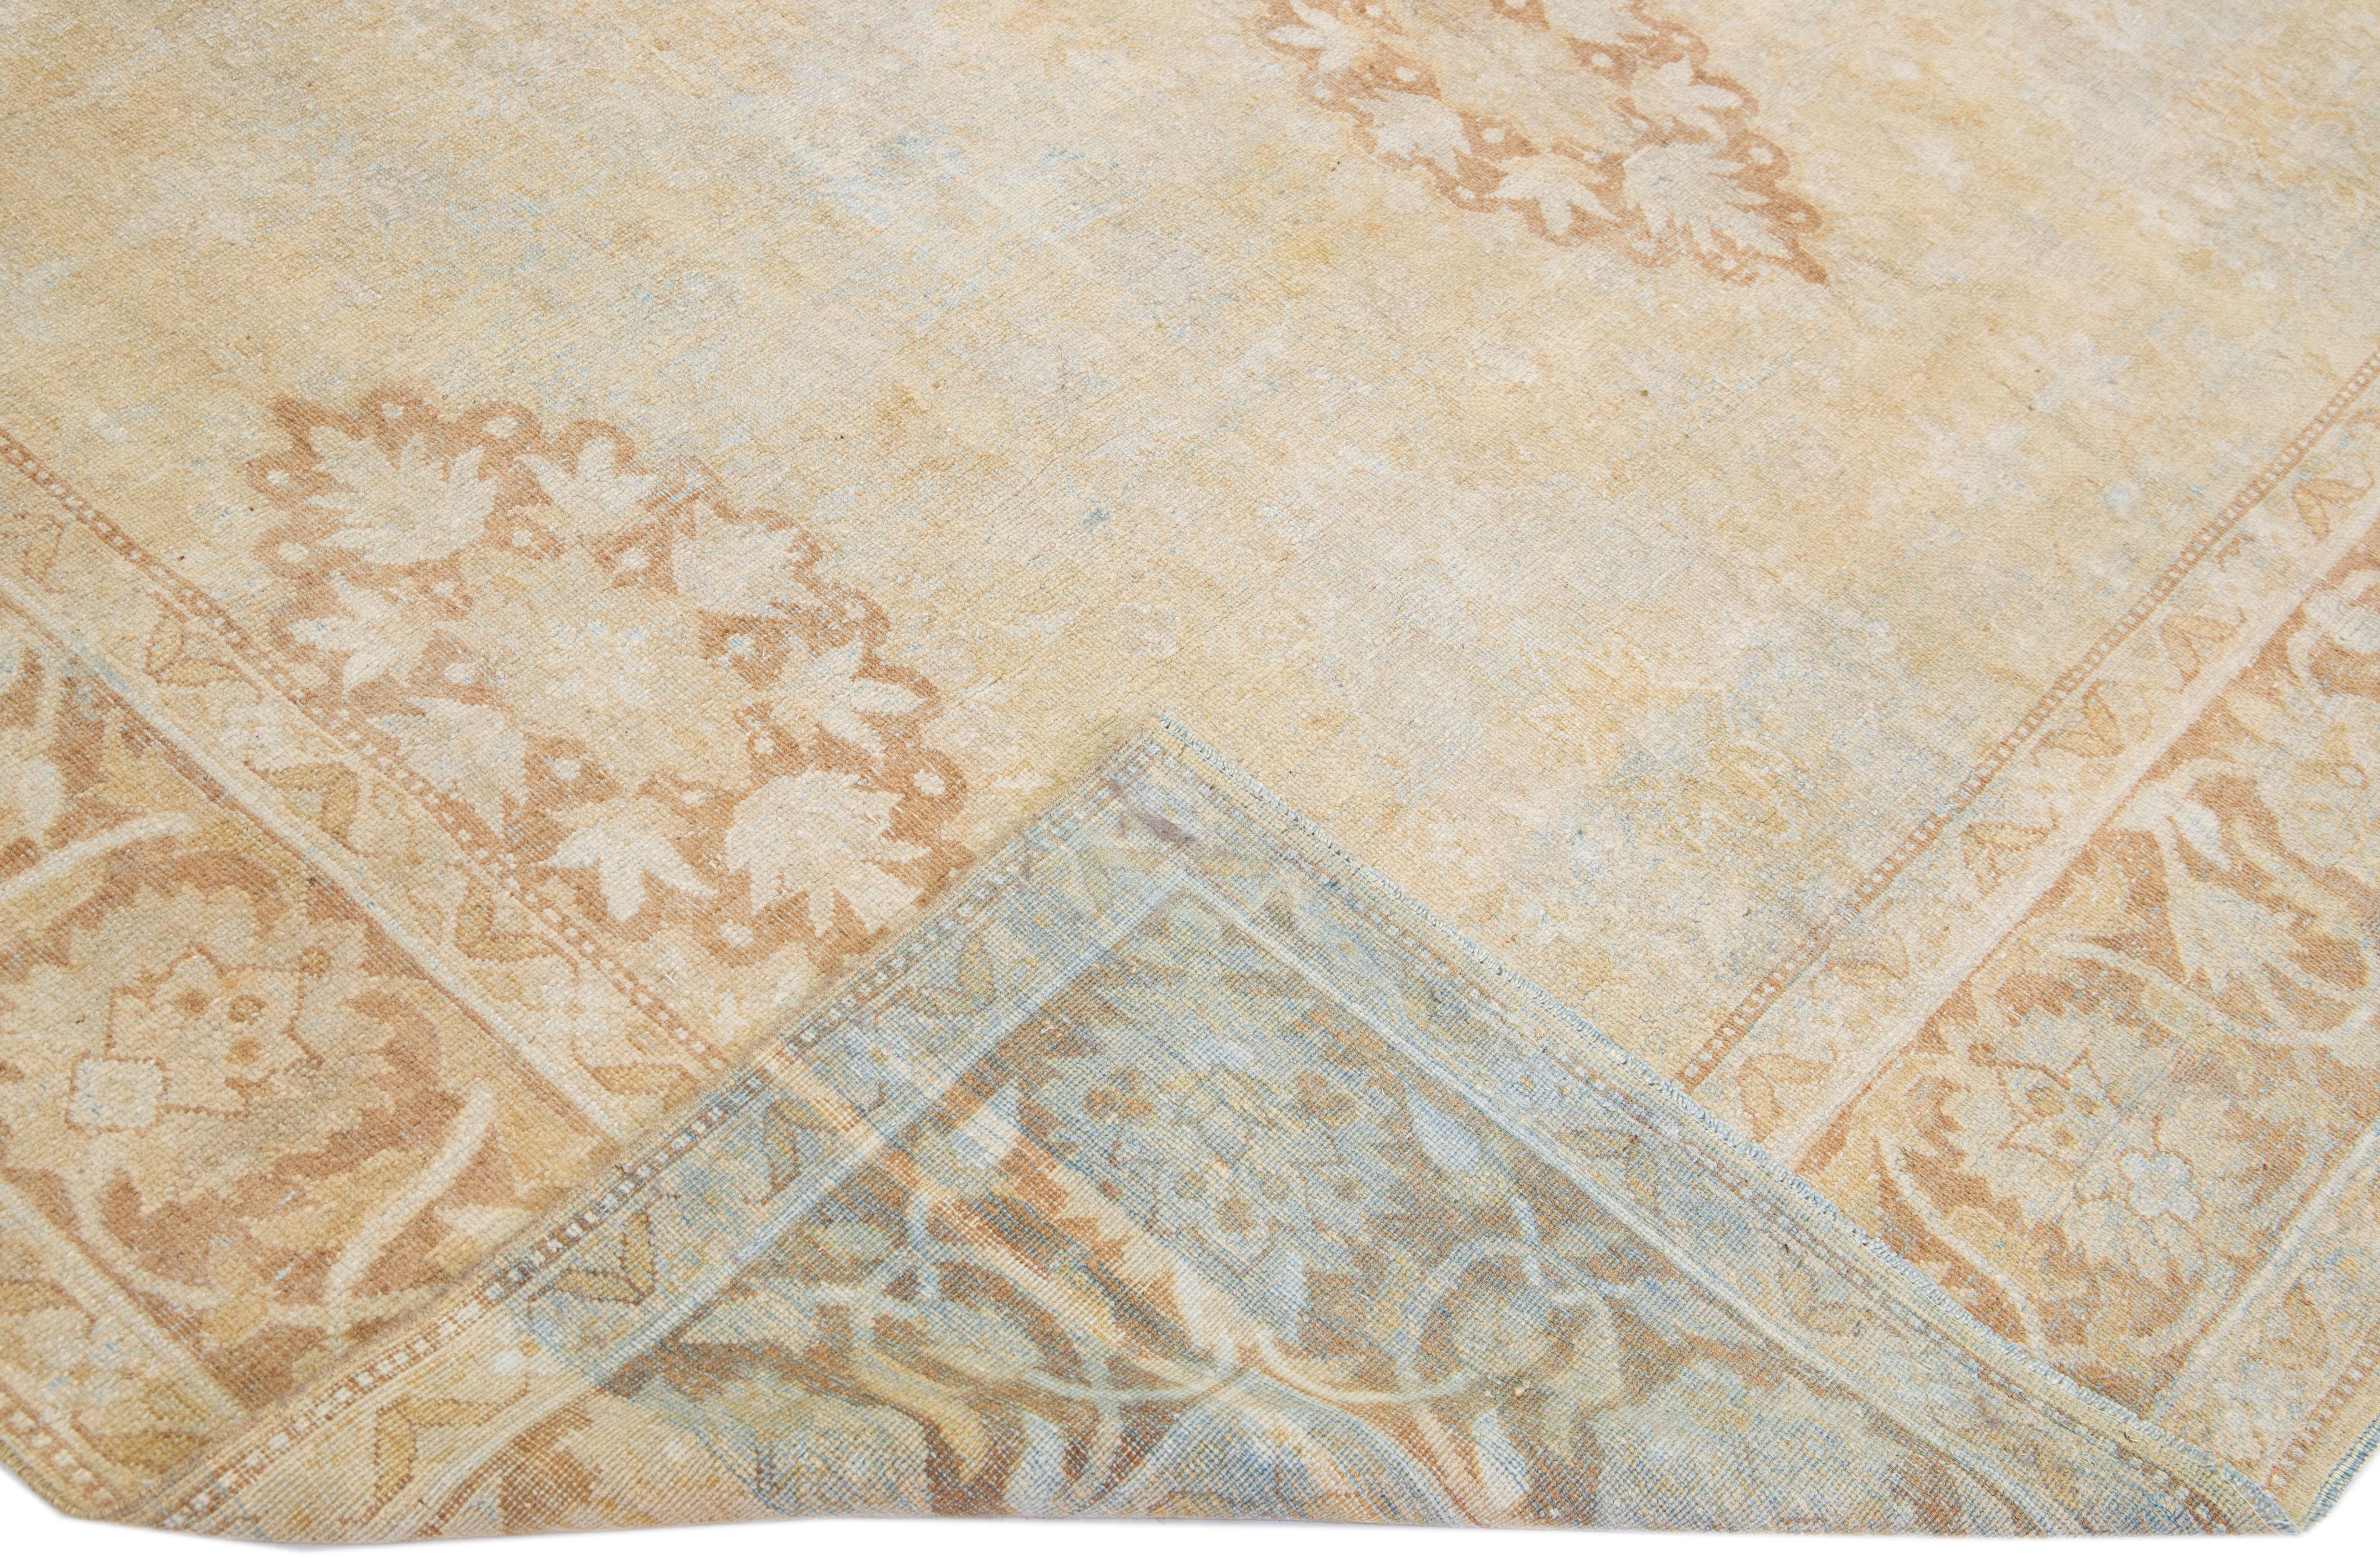 Magnifique tapis antique Agra en laine nouée à la main avec un champ de couleur beige. Ce tapis indien présente des accents bruns et bleus dans un magnifique motif floral.

Ce tapis mesure : 9'7